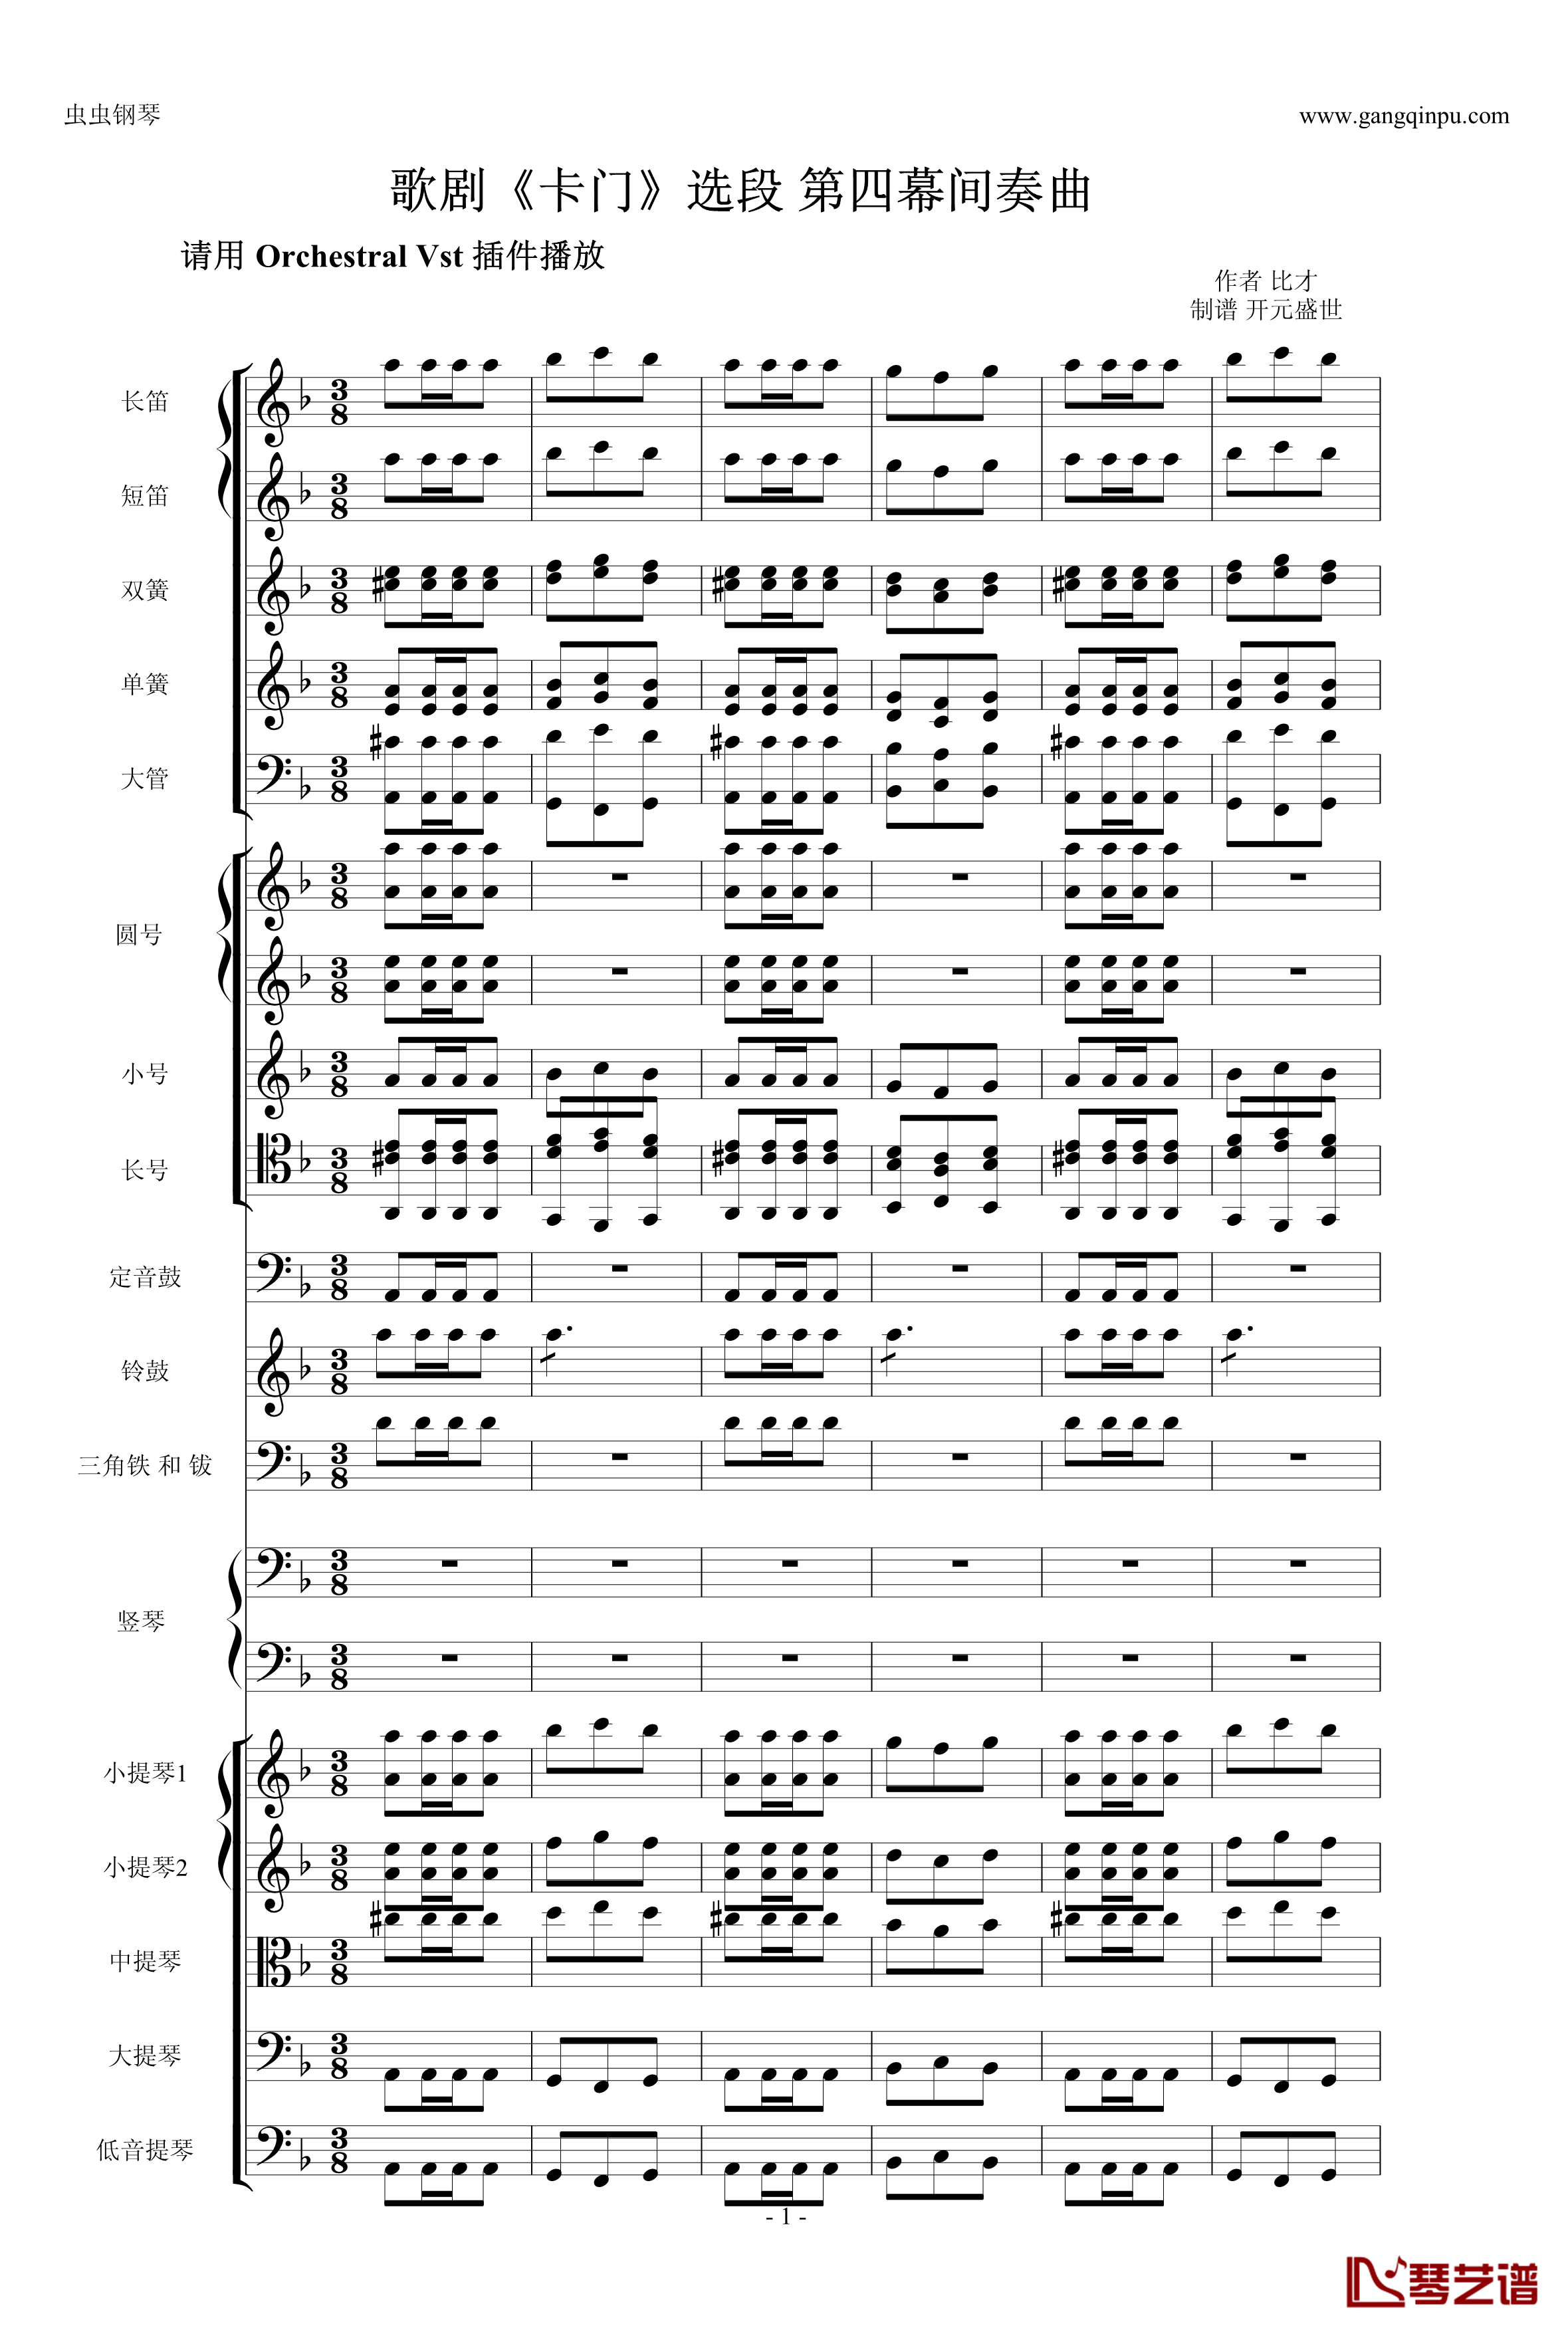 歌剧卡门选段钢琴谱-比才-Bizet- 第四幕间奏曲1